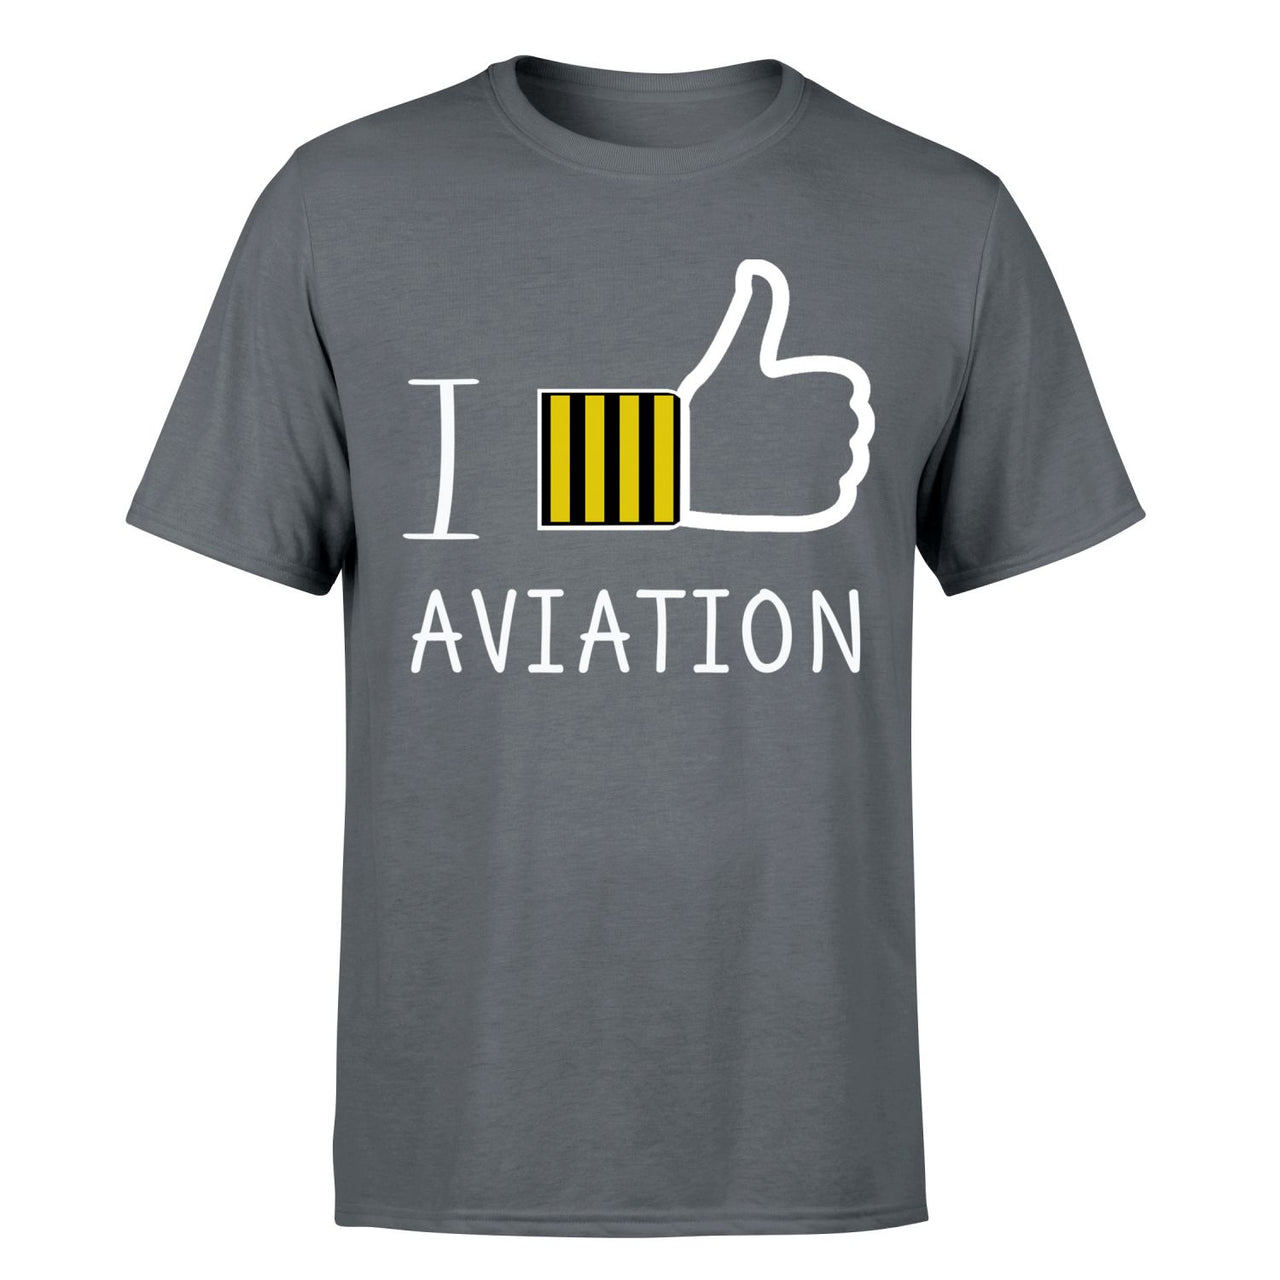 I Like Aviation Designed T-Shirts